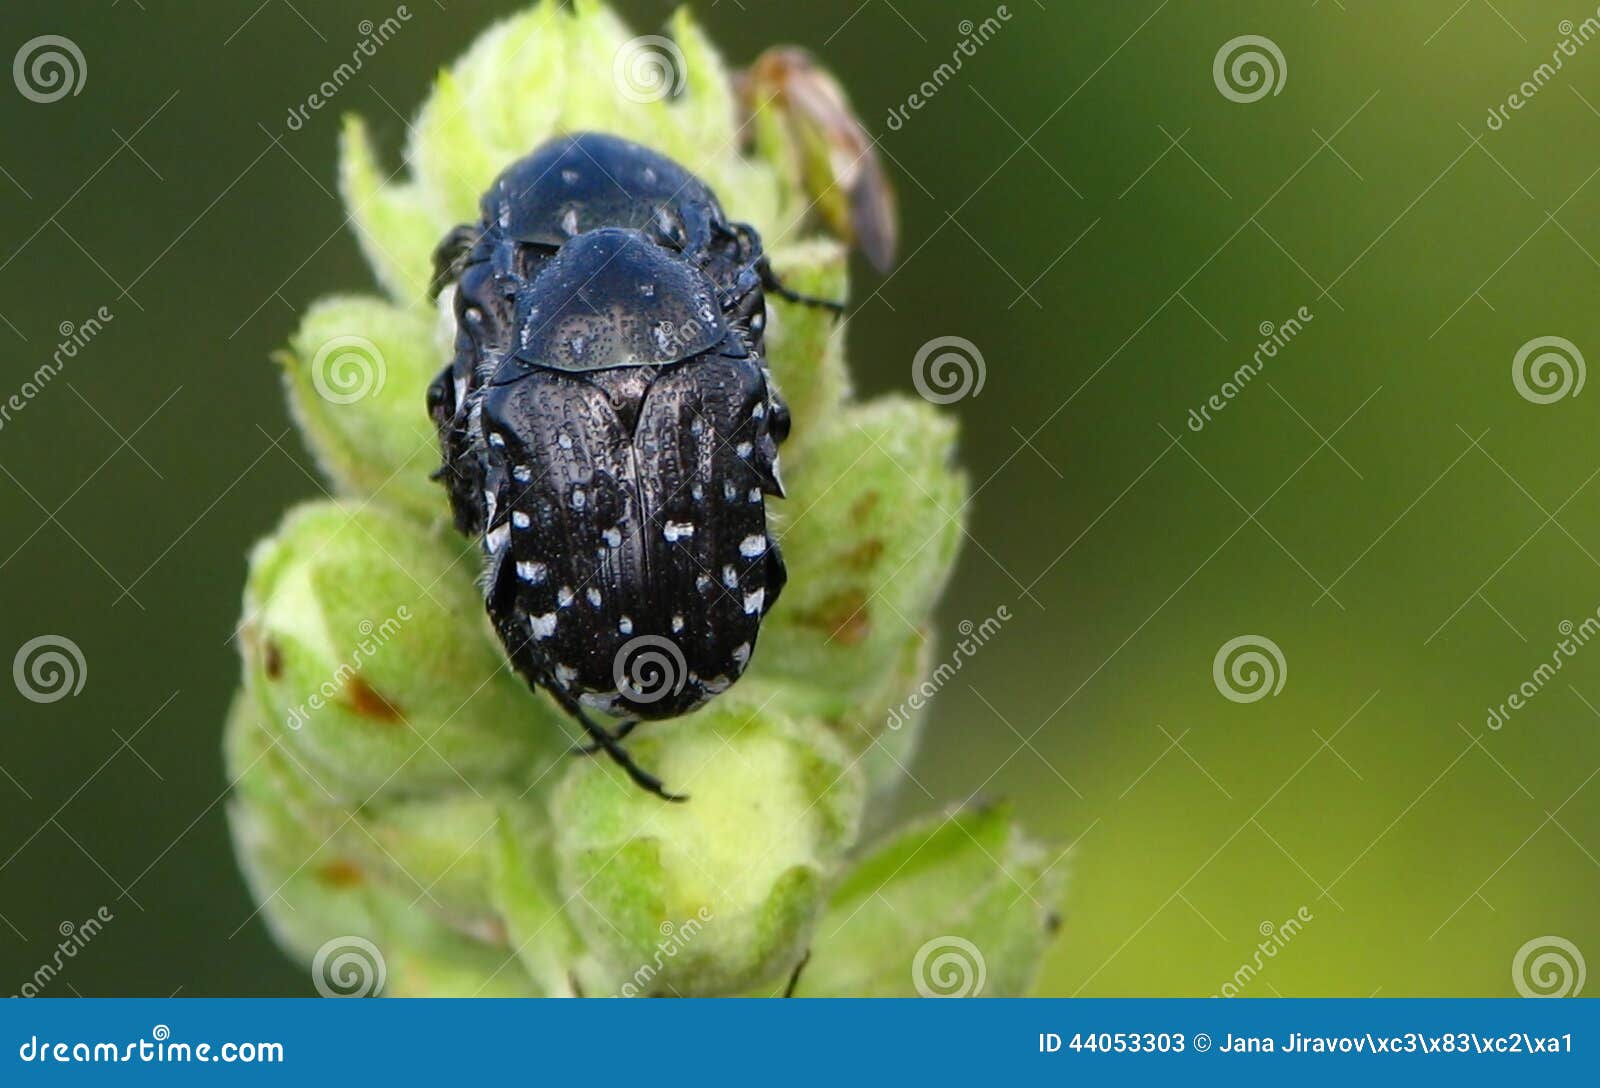 oxythyrea funesta, black beetles